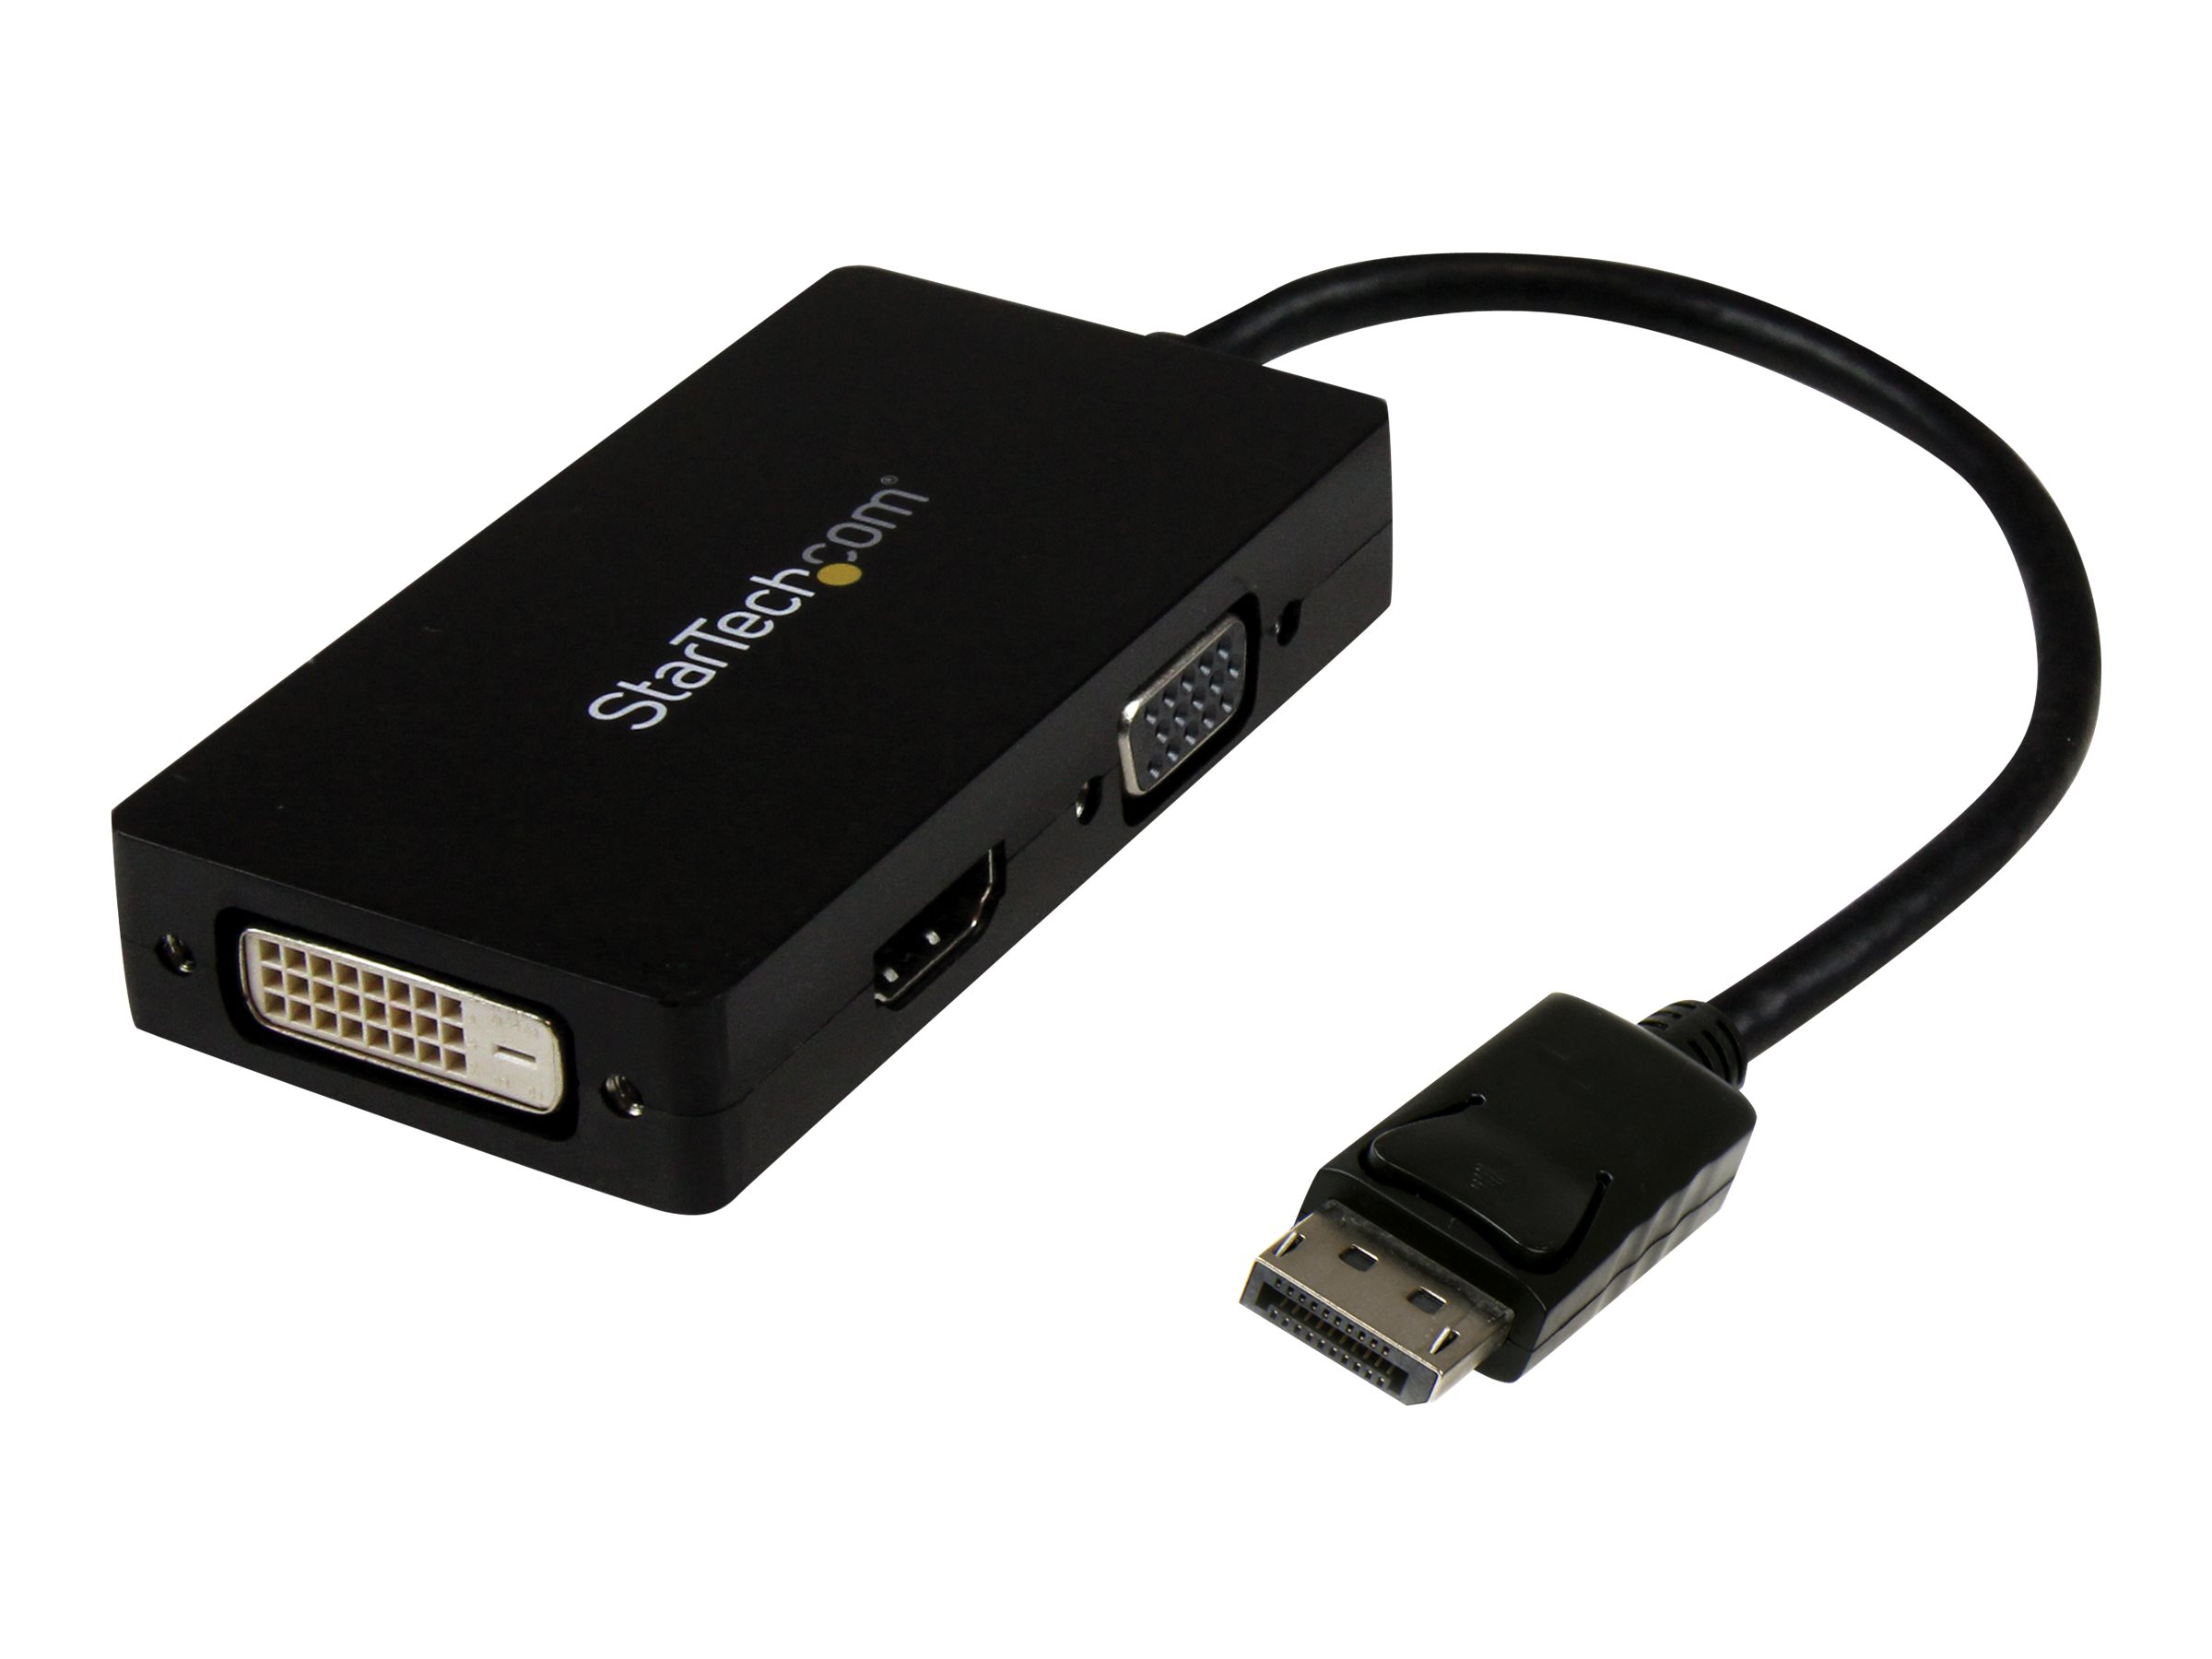 StarTech.com 3-in1 DisplayPort auf HDMI / DVI / VGA Adapter - DP zu VGA, DP zu HDMI, DP zu DVI Konverter - 1920x1200 / 1080p - Schwarz - Videokonverter - Schwarz